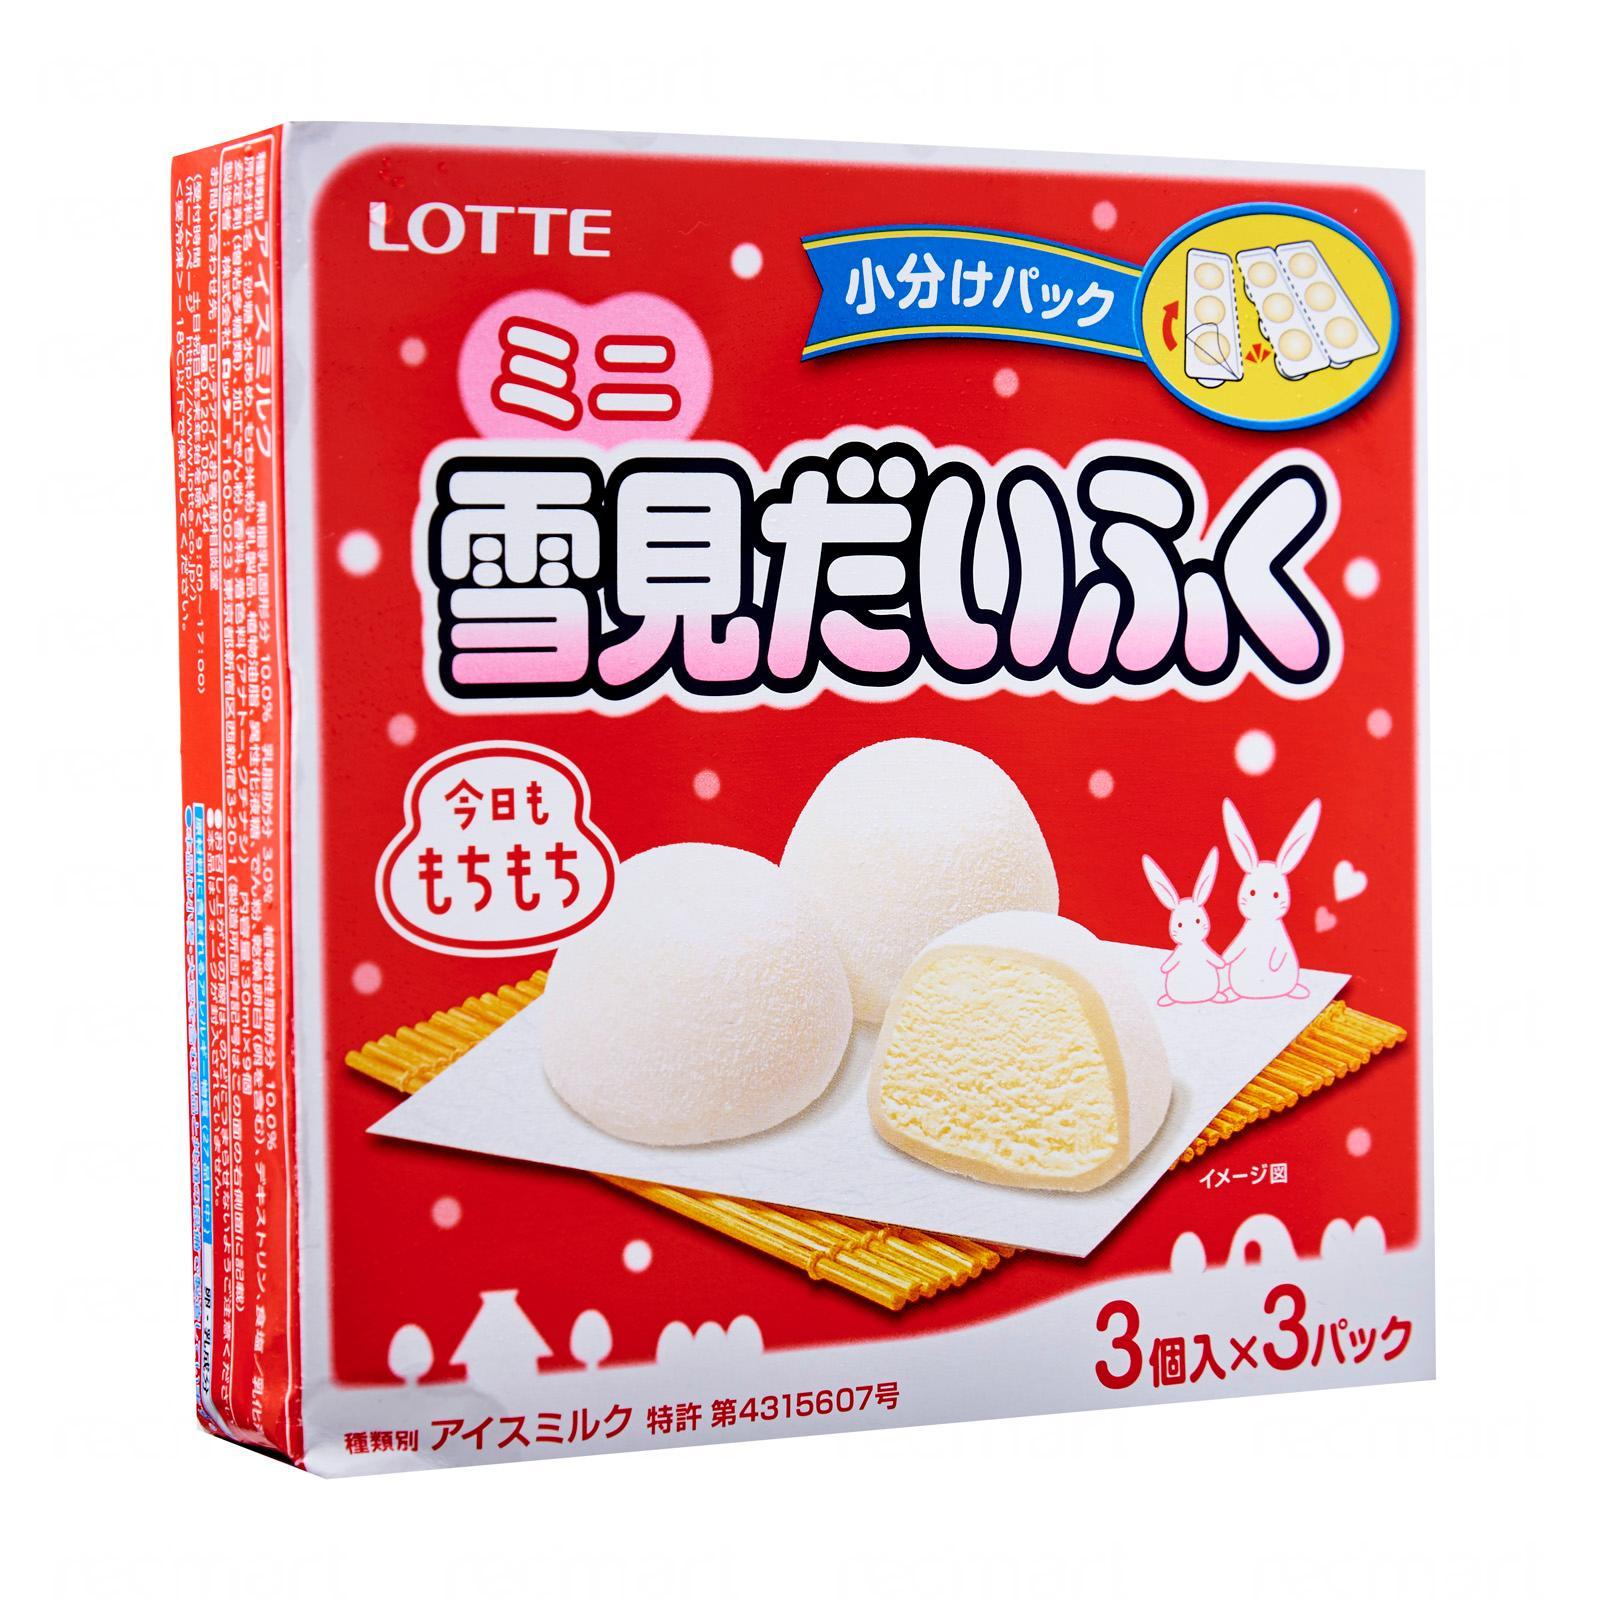 Mochi Ice Cream – Yumochi